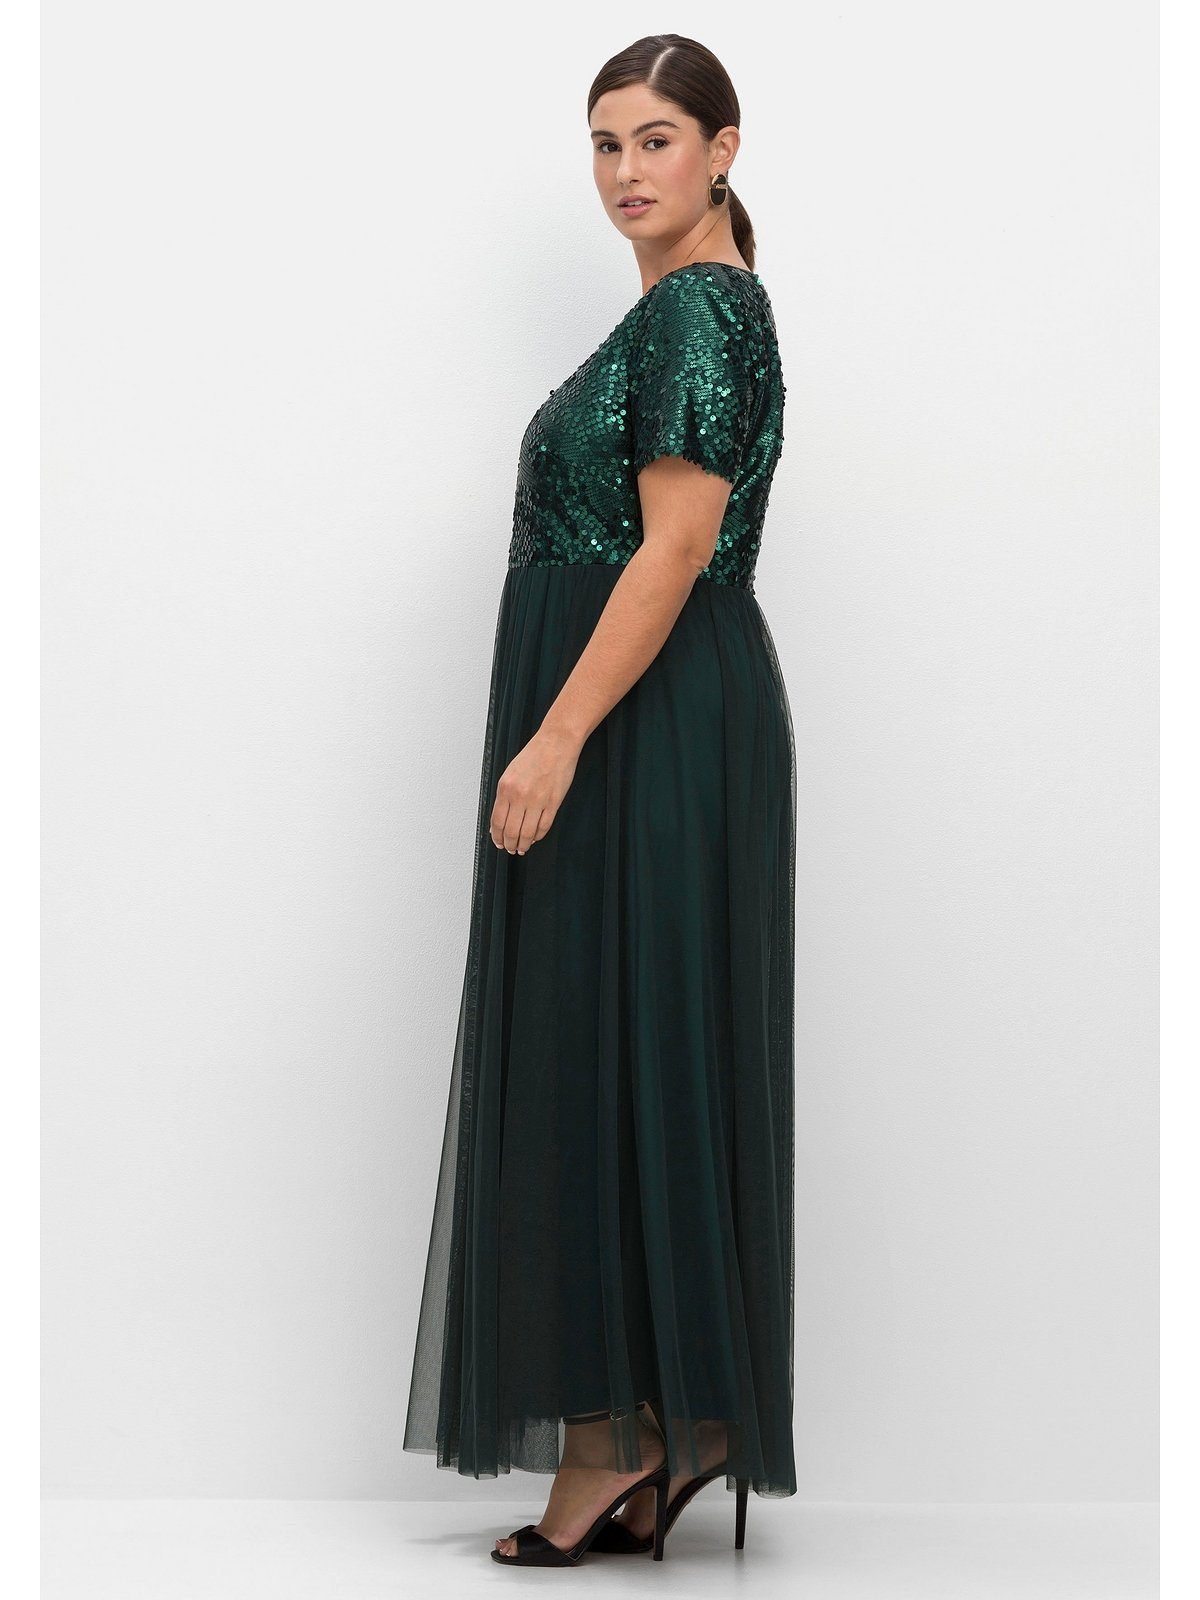 Pailletten Sheego in tiefgrün Große Größen A-Linie mit Abendkleid